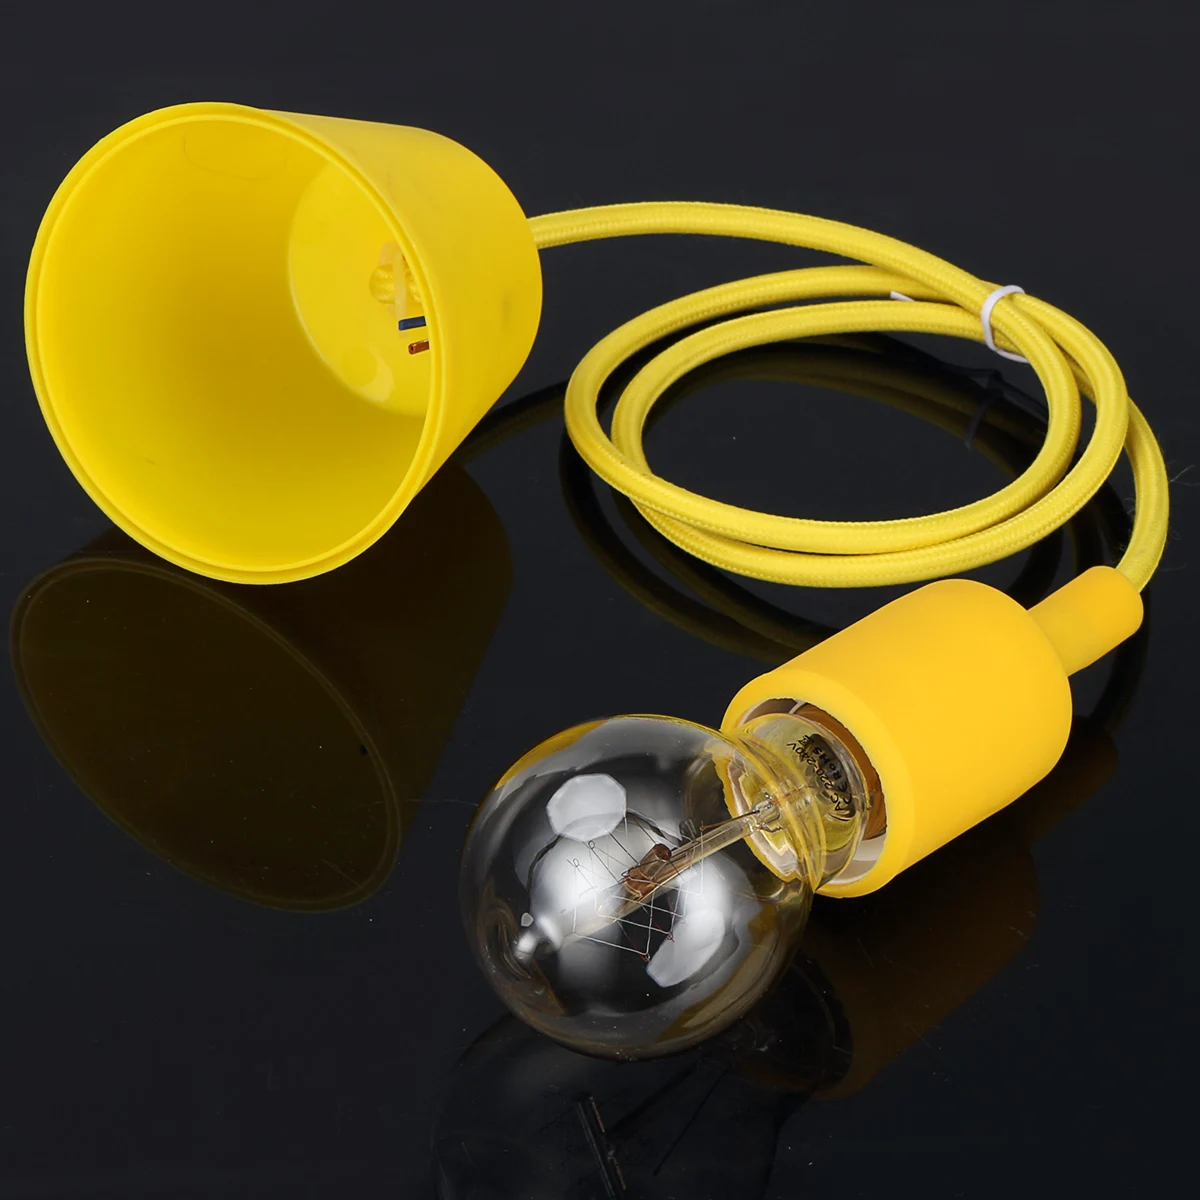 E27 40 Вт Светодиодный светильник накаливания, винтажный Ретро промышленный стиль, лампочка, вольфрамовая лампочка, глобус, светильник Эдисона с Blub Holer Base